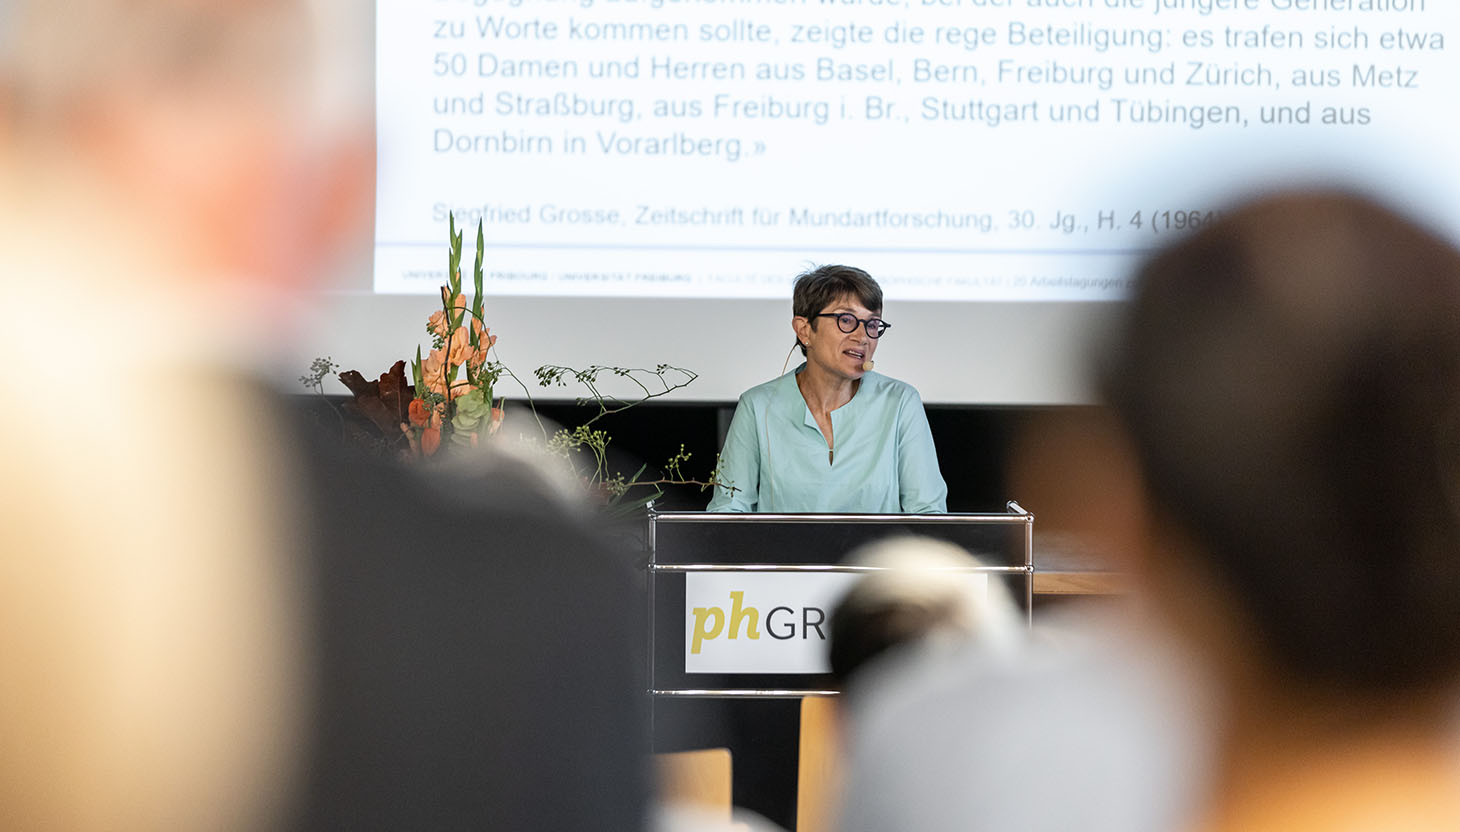 Prof. Helen Christen (Universität Fribourg) fokussierte in ihrem Vortrag die lange Geschichte der Alemann:innentagung.